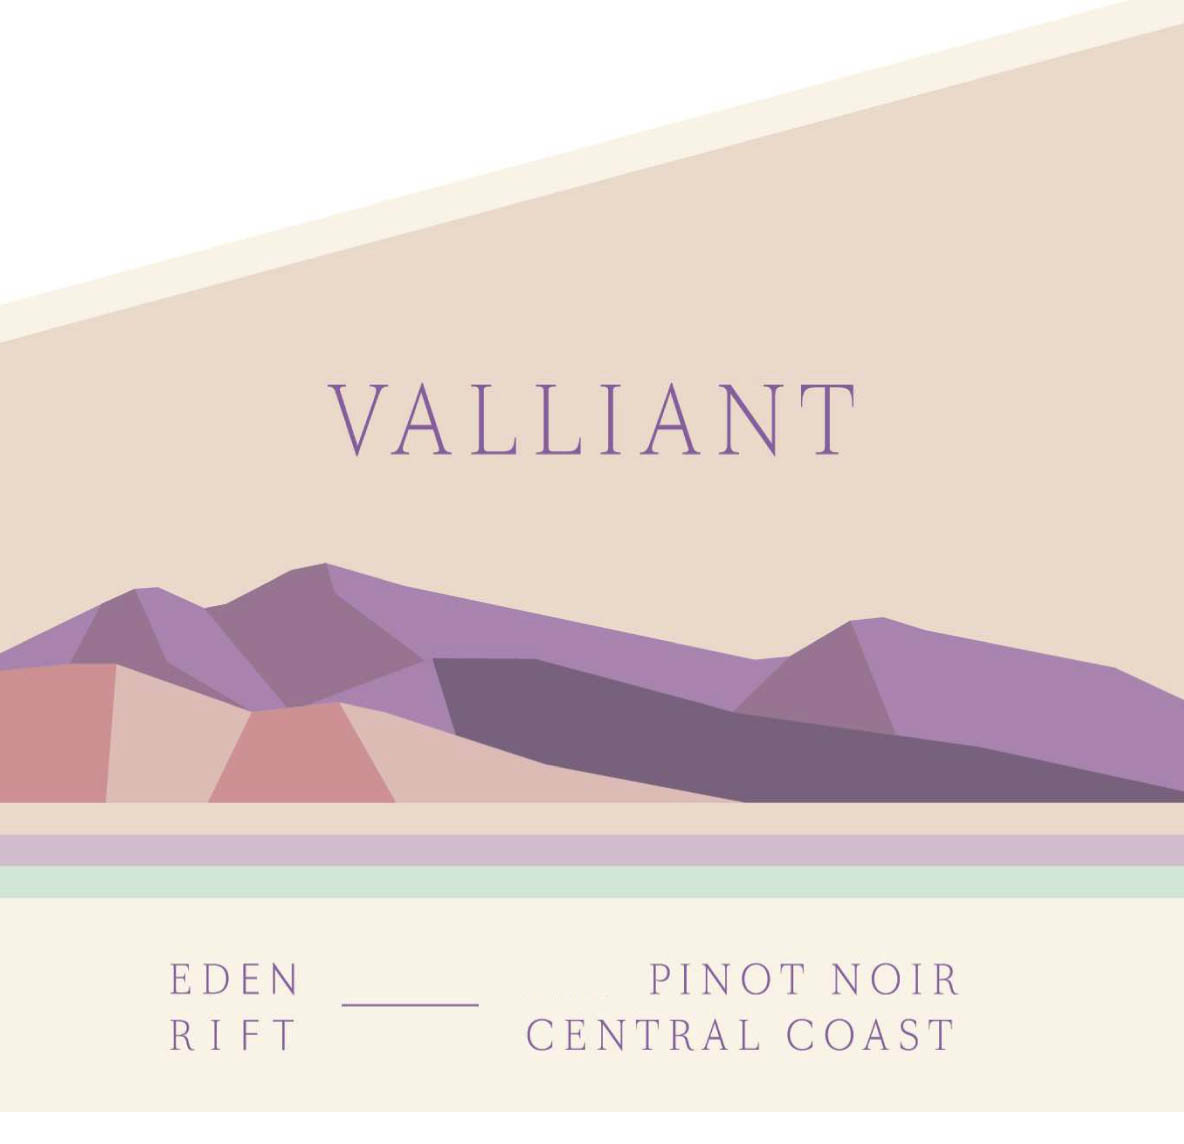 Eden Rift - Valliant Pinot Noir label